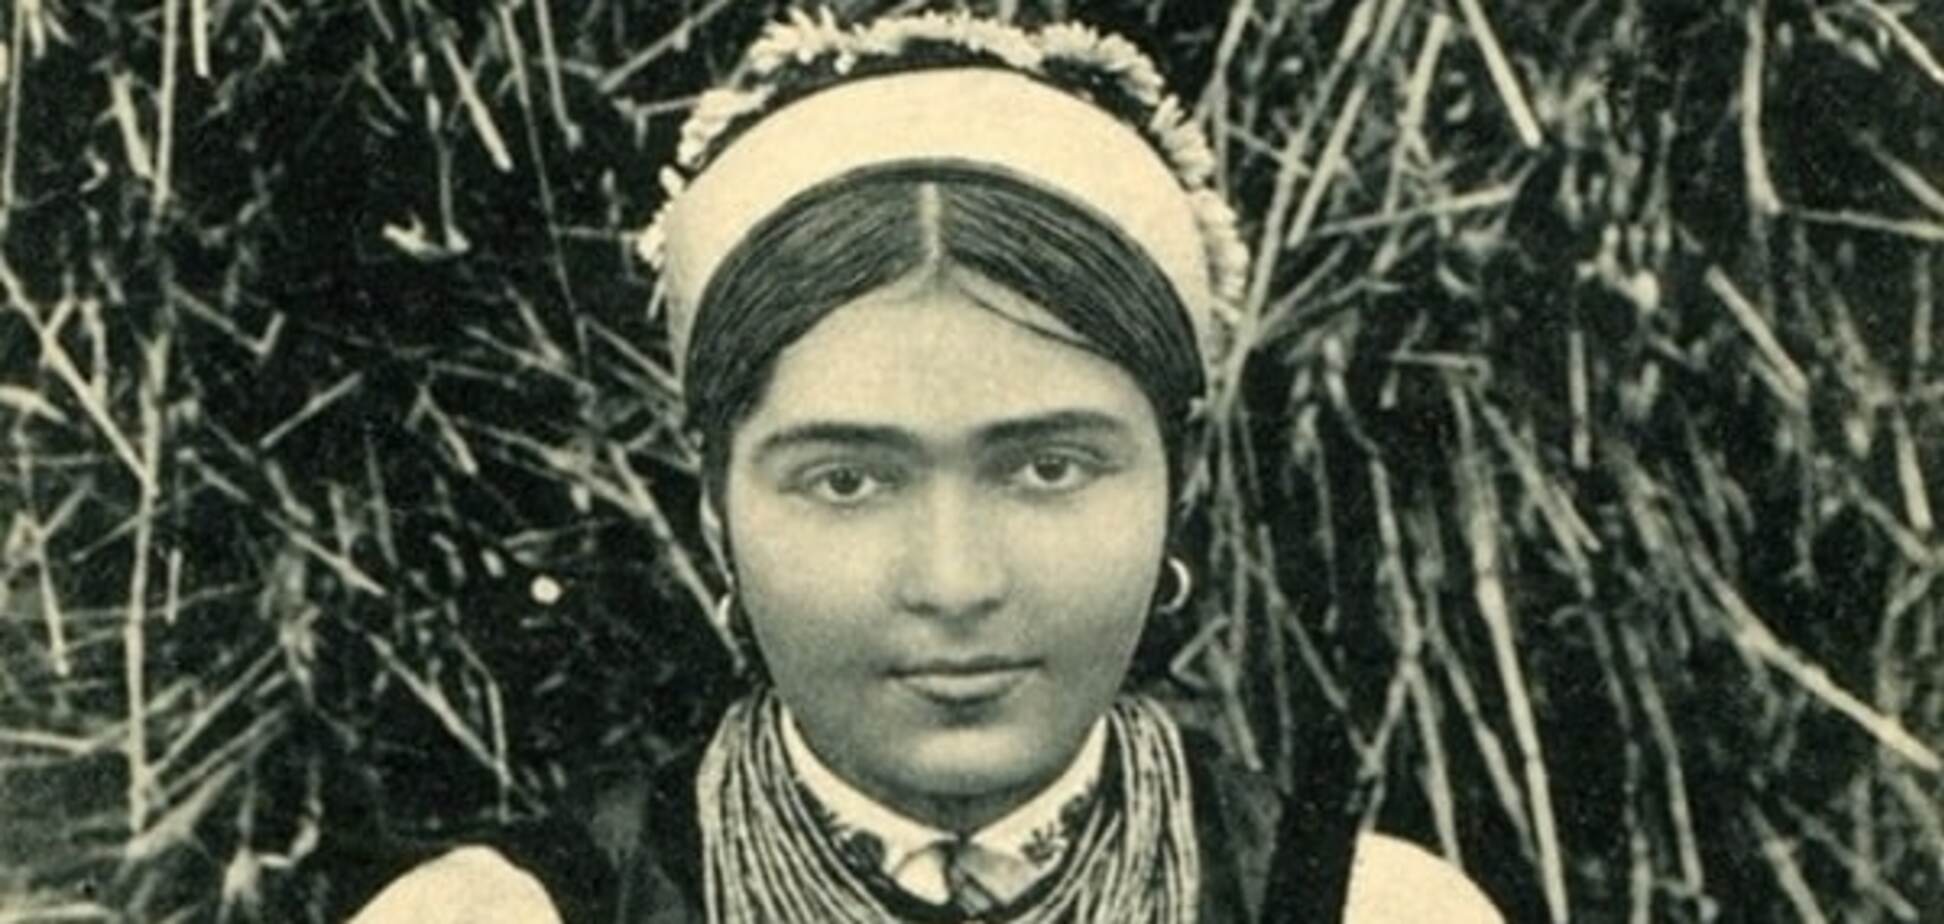 Красота нации: как выглядели украинские женщины 100 лет назад